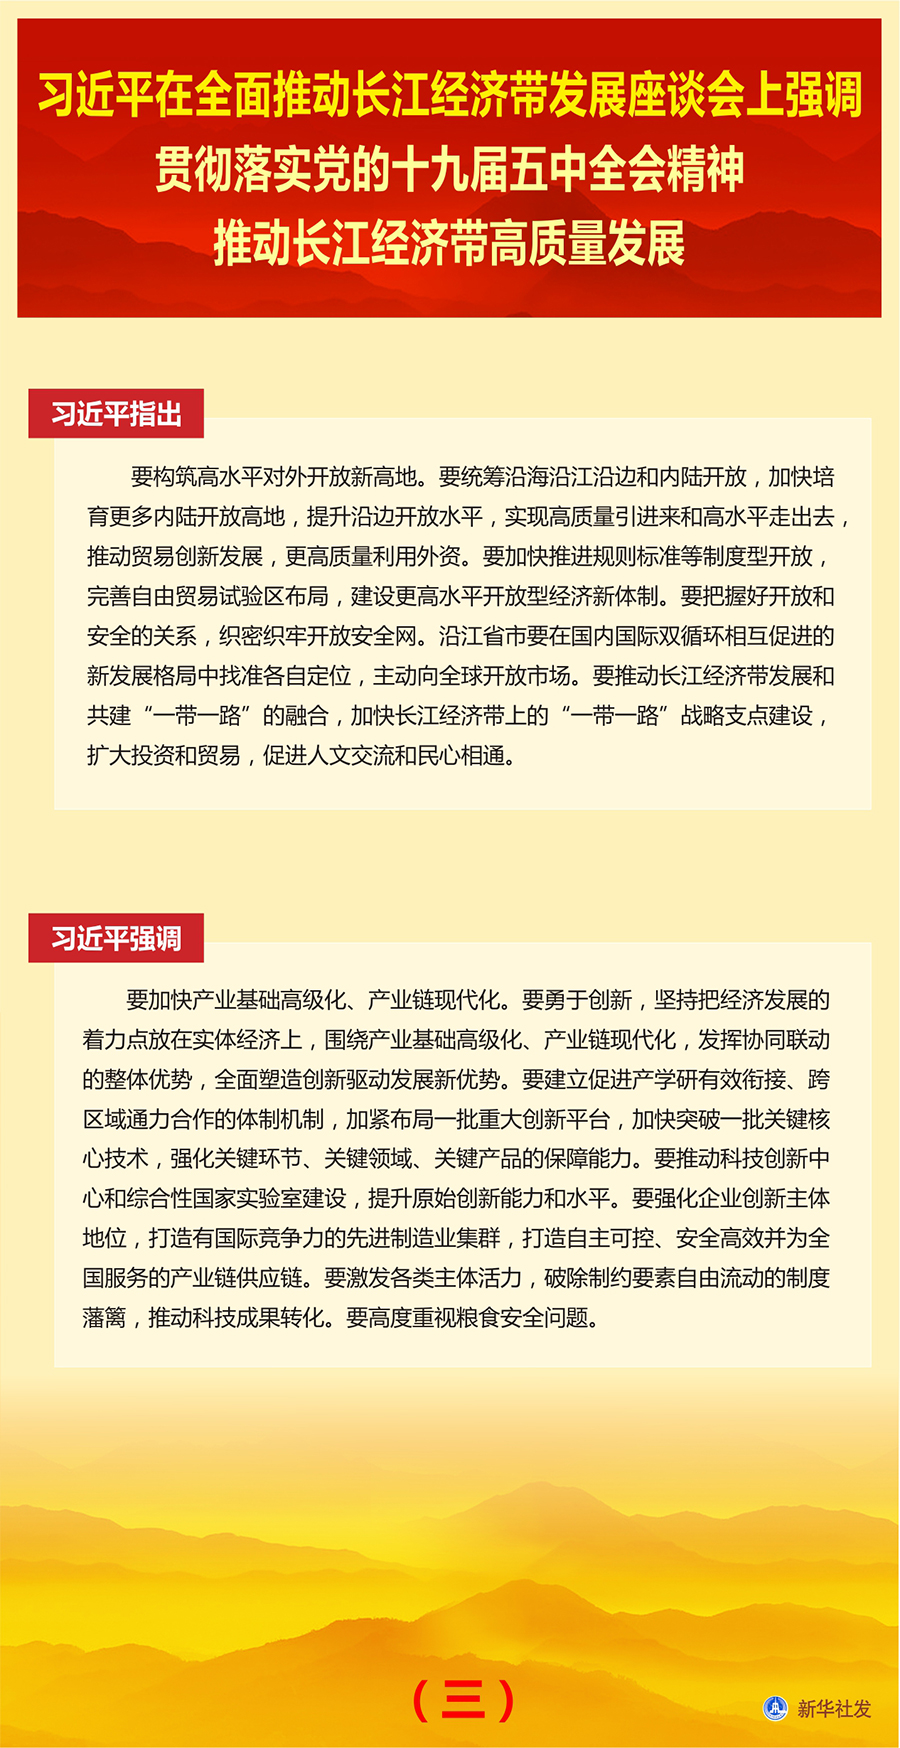 习近平在全面推动长江经济带发展座谈会上发表讲话(图5)